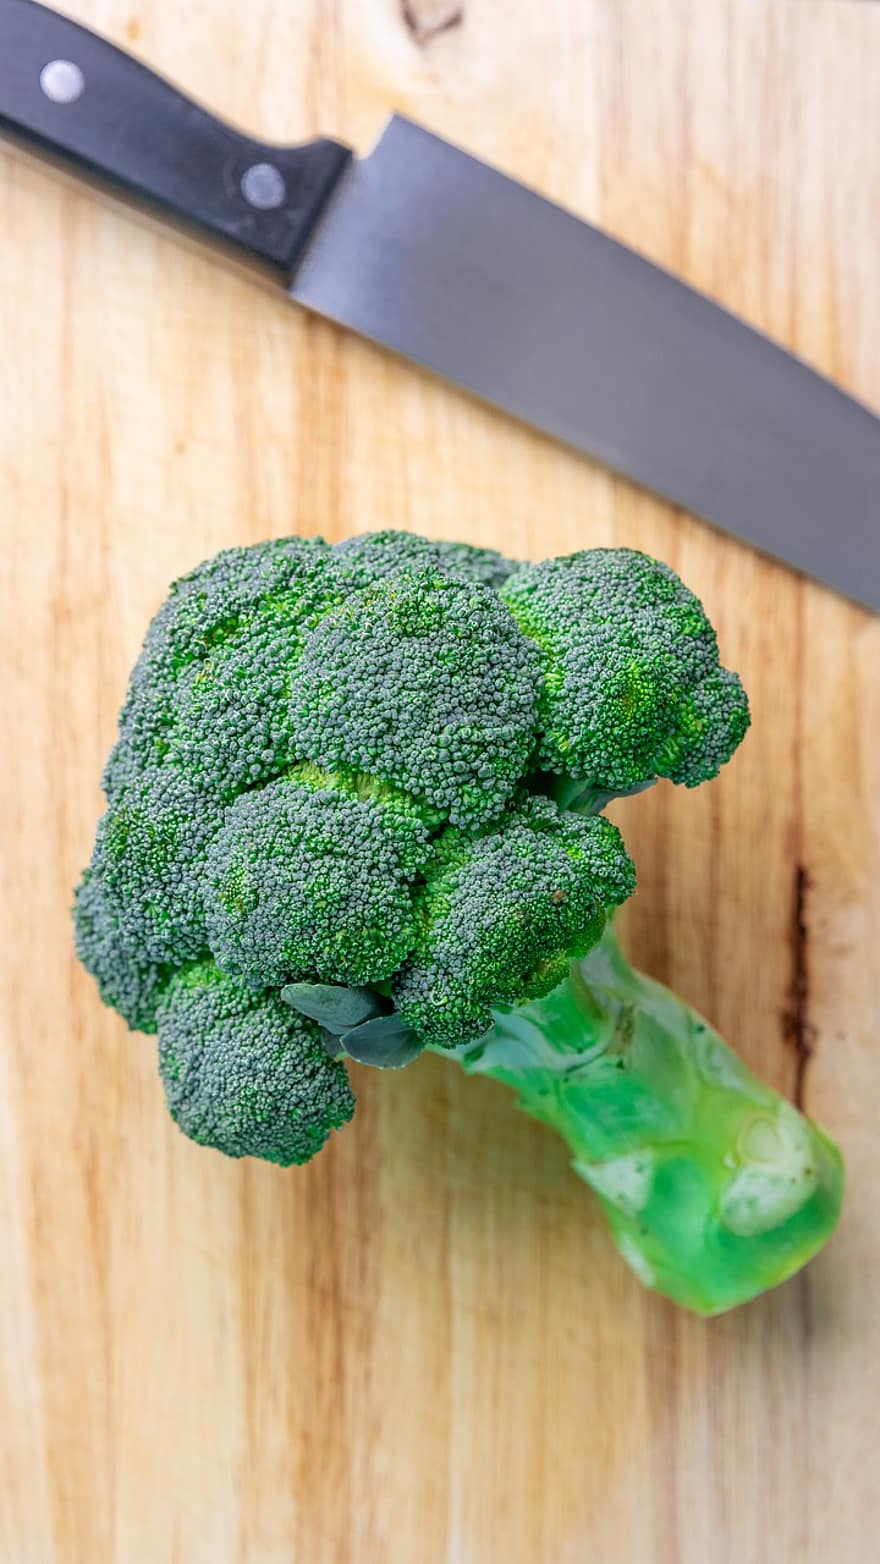 Brokoli, sayur-mayur, sehat, mentah, organik, vegetarian, nutrisi